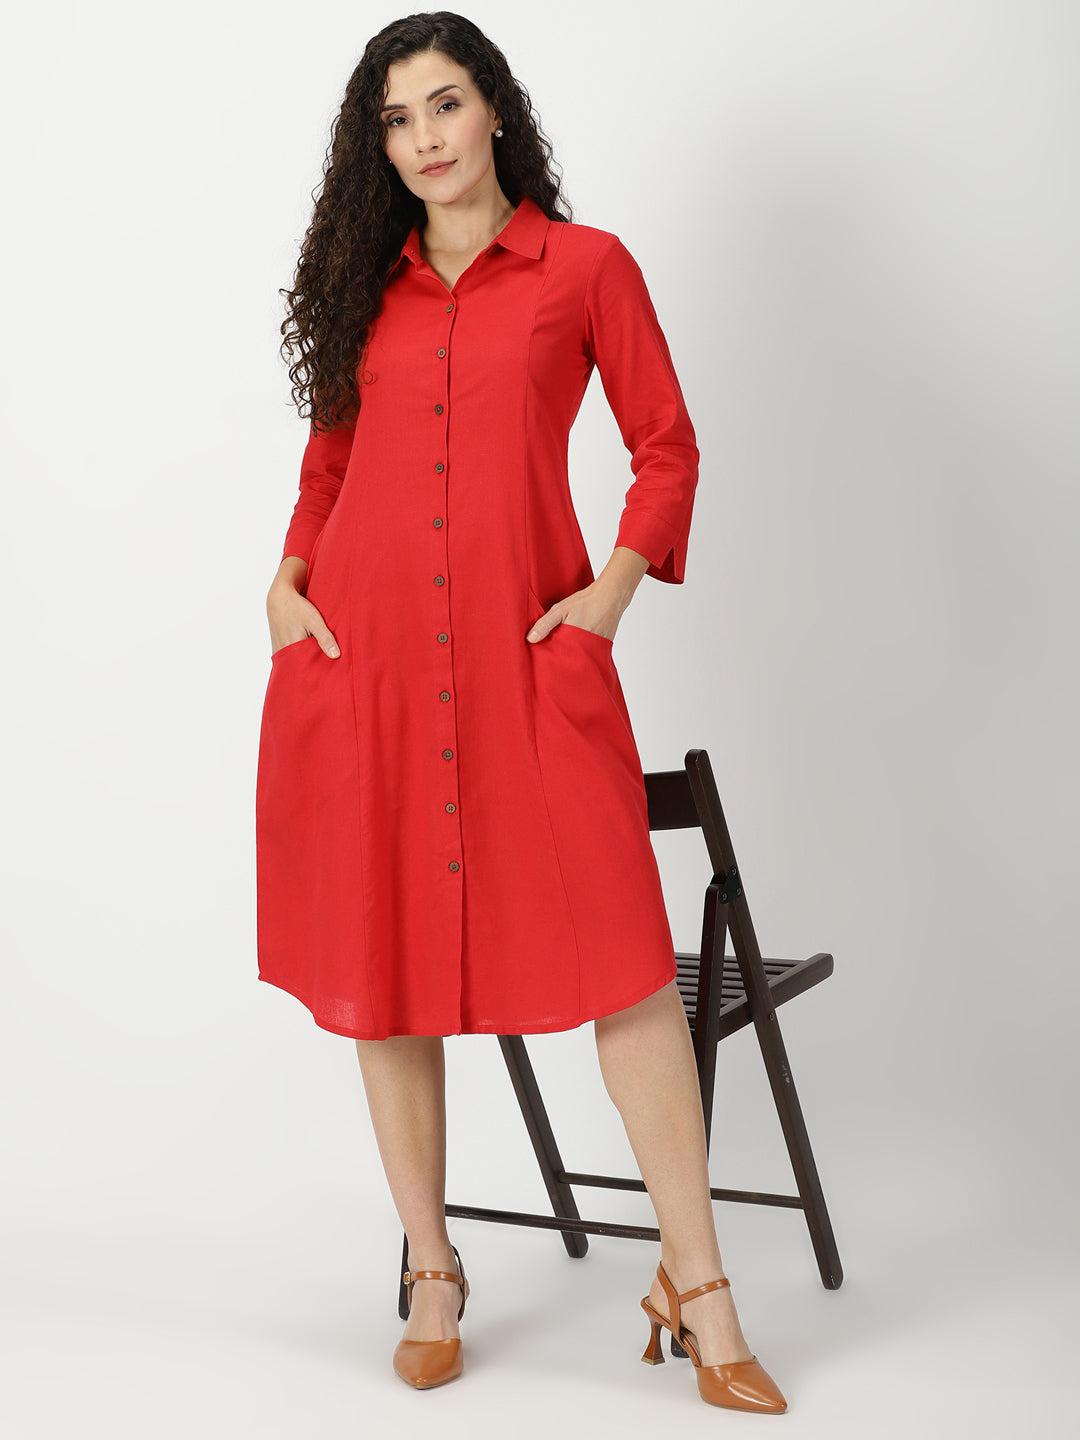 Buy Women's Sambalpuri Certified Handloom Pure Cotton Straight Kurti (Red,  2XL)-PID42751 at Amazon.in